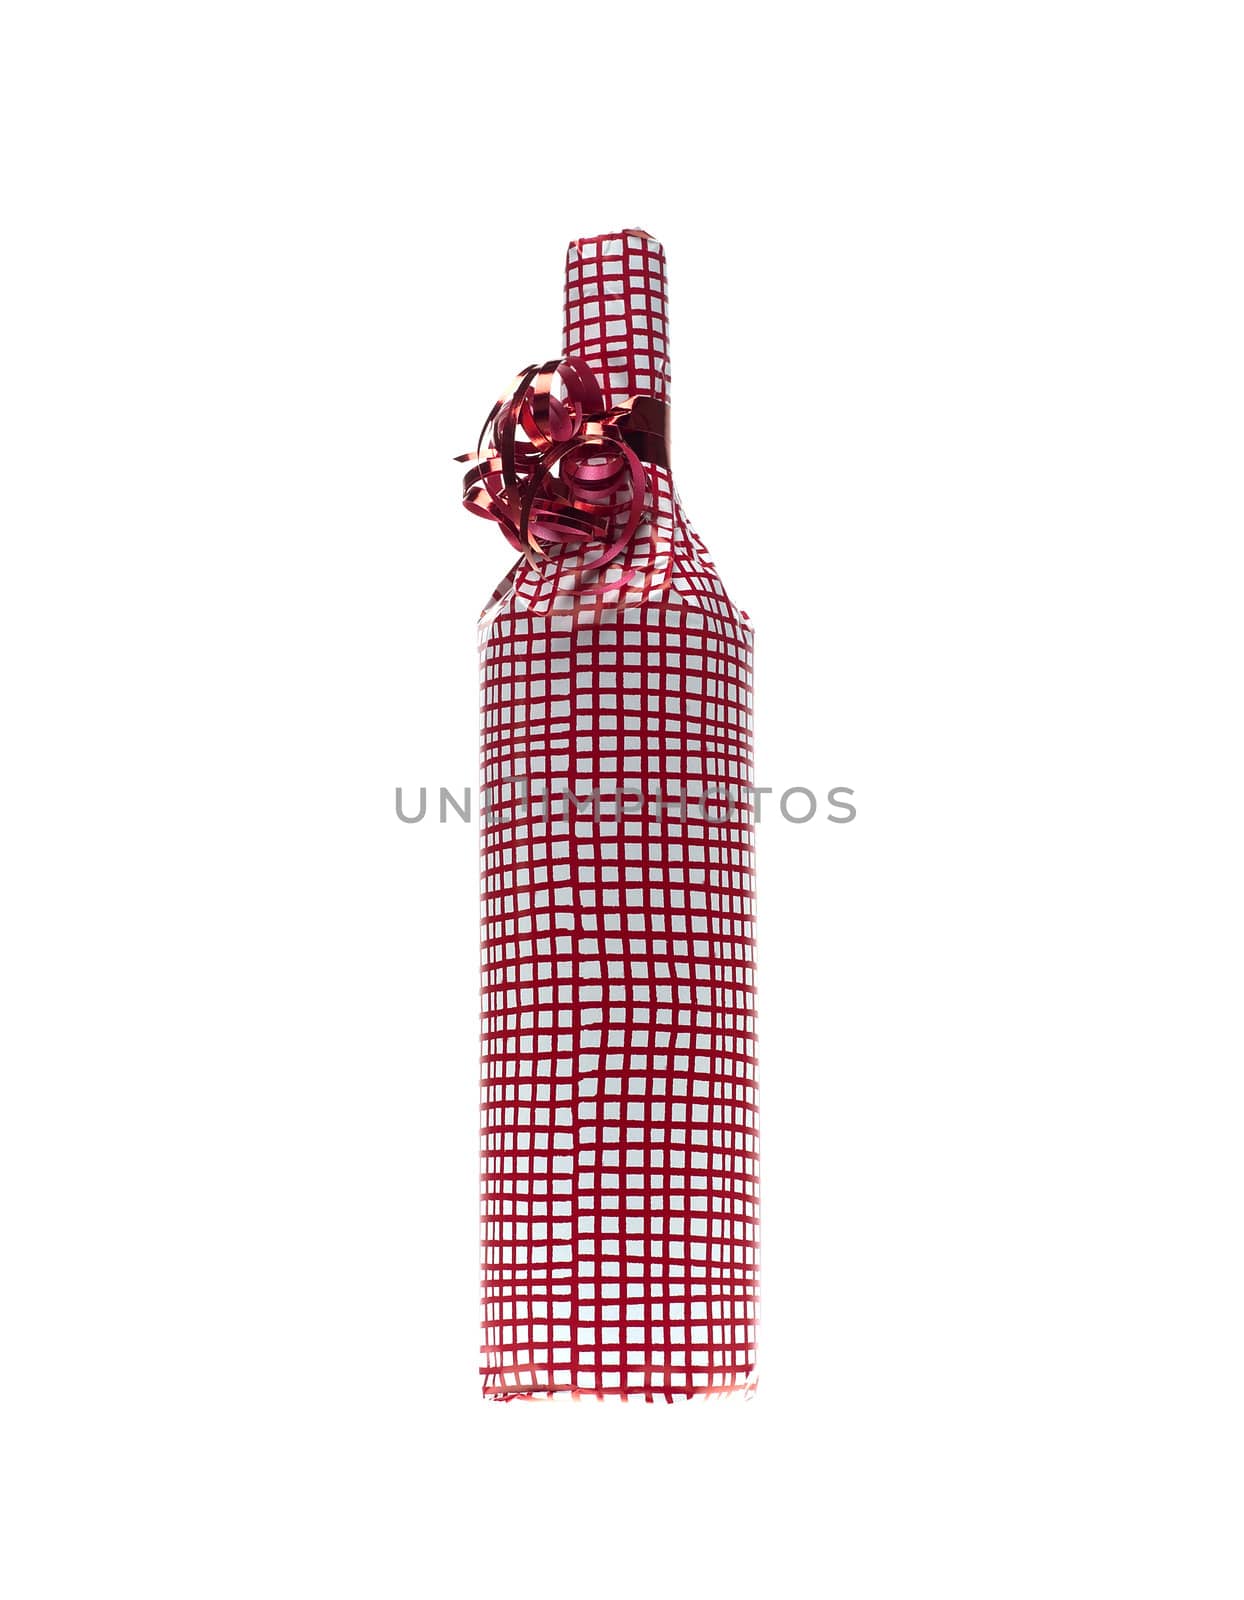 Wrapped in wine bottle by gemenacom